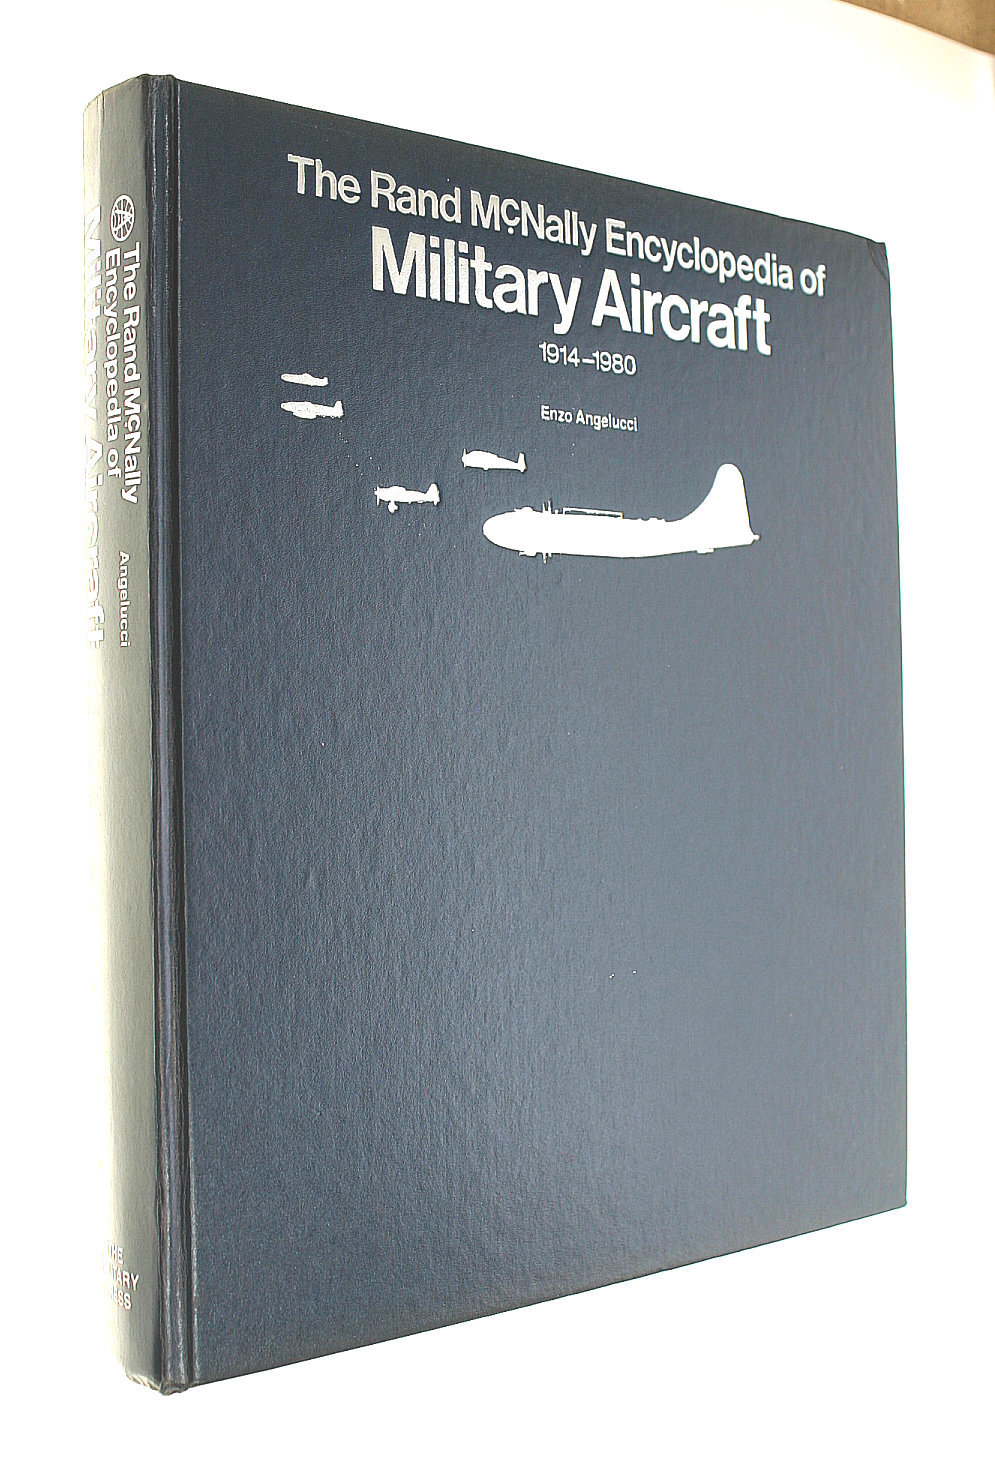 A ANGELUCCI - Rand Mcnally Encyclopedia Of Military Aircrafts